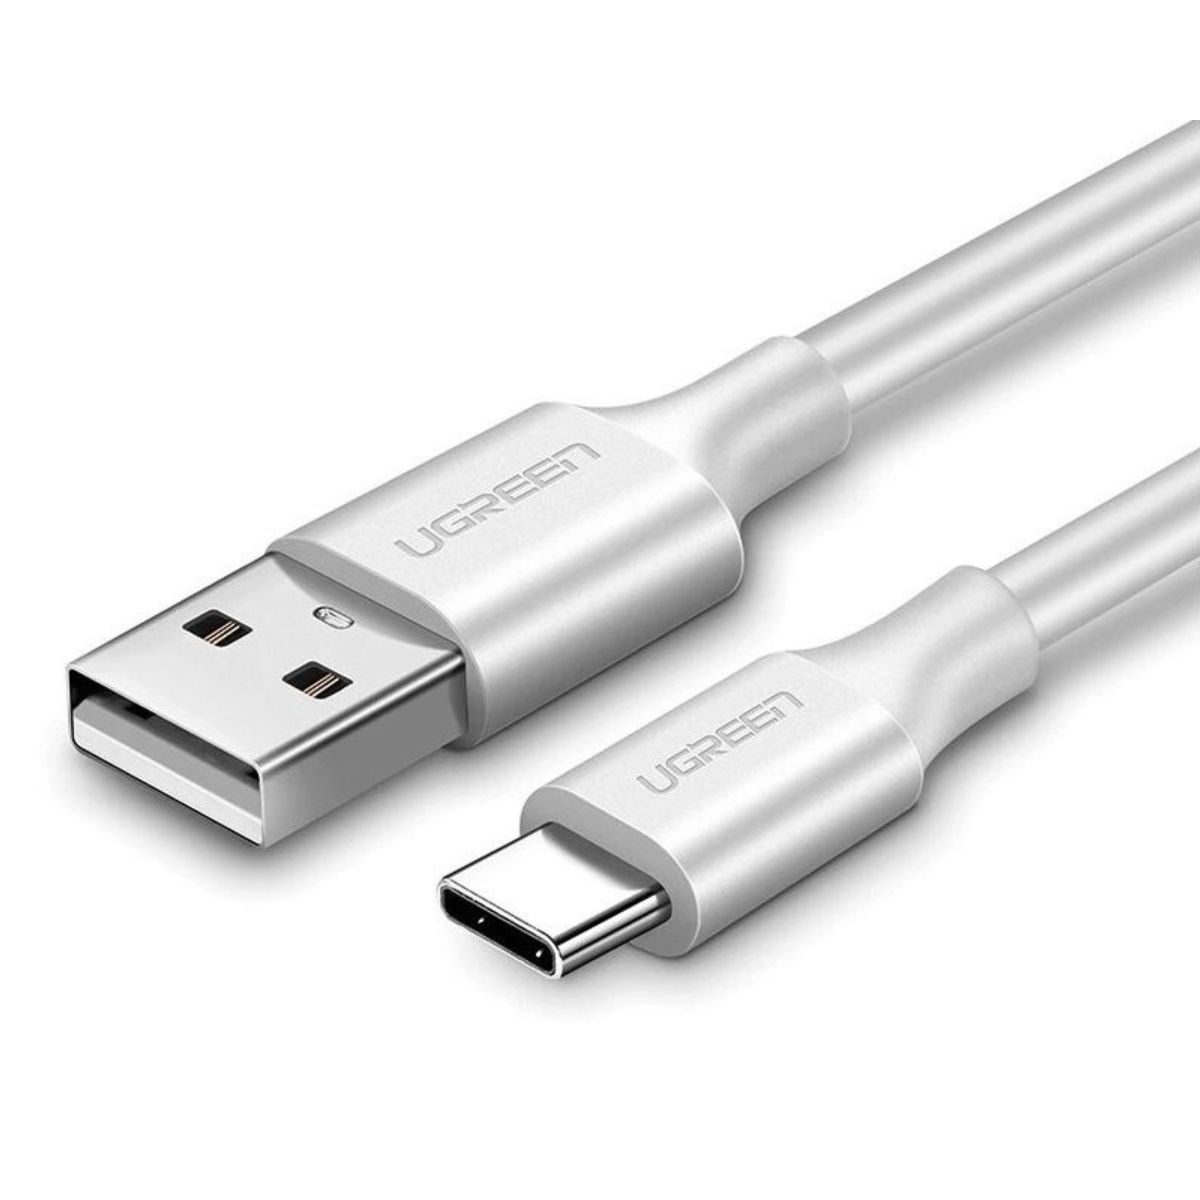 Cáp sạc USB 2.0 sang USB type C Ugreen US287, 60122 chiều dài 1.5m, màu trắng, hỗ trợ sạc nhanh 3A